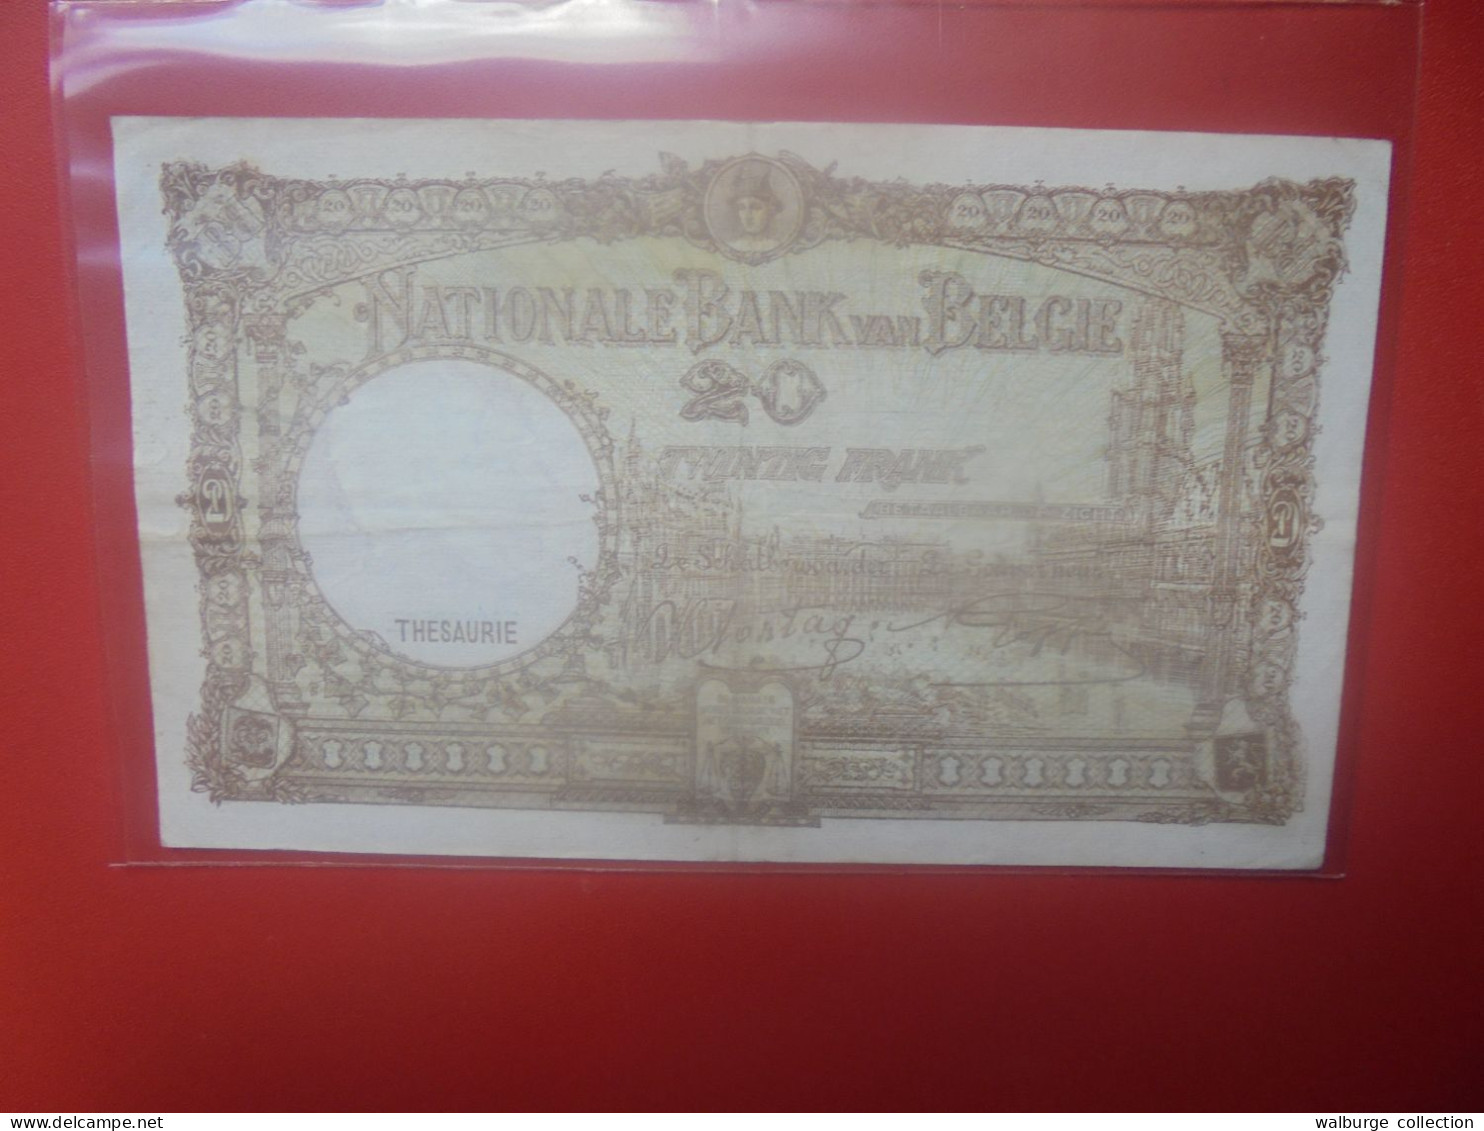 BELGIQUE 20 Francs 1941 Circuler (B.33) - 20 Francs